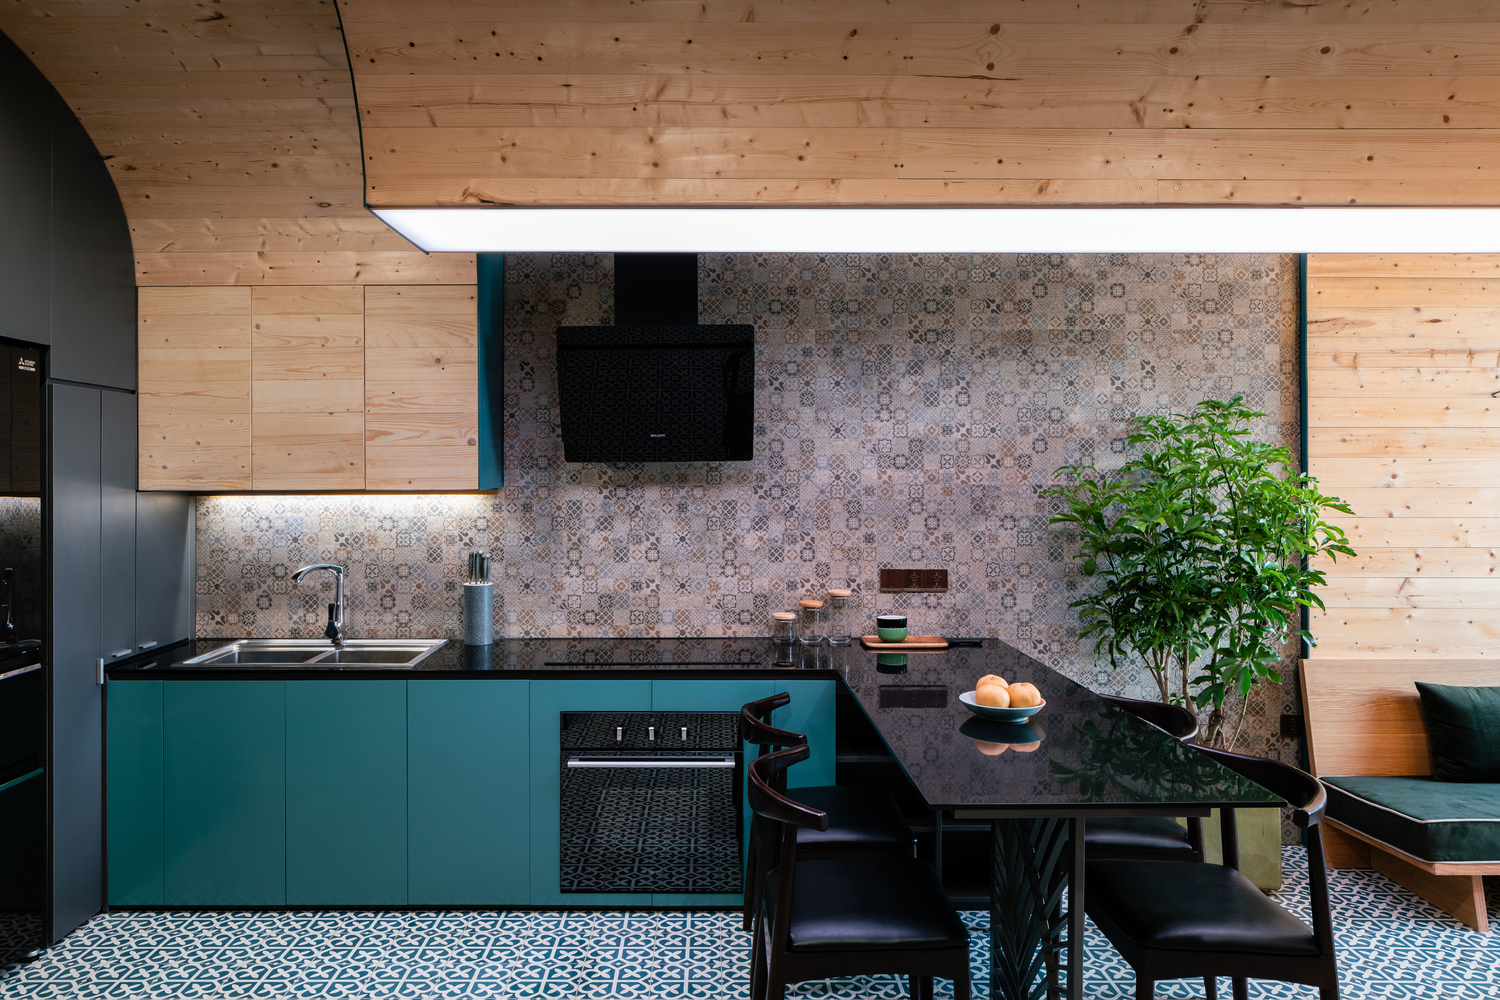 Sắc màu đen và xanh cổ vịt giúp khu bếp khoác lên mình vẻ sang trọng, hiện đại nhưng vẫn hòa hợp với bức tường gạch in hoa văn cổ điển